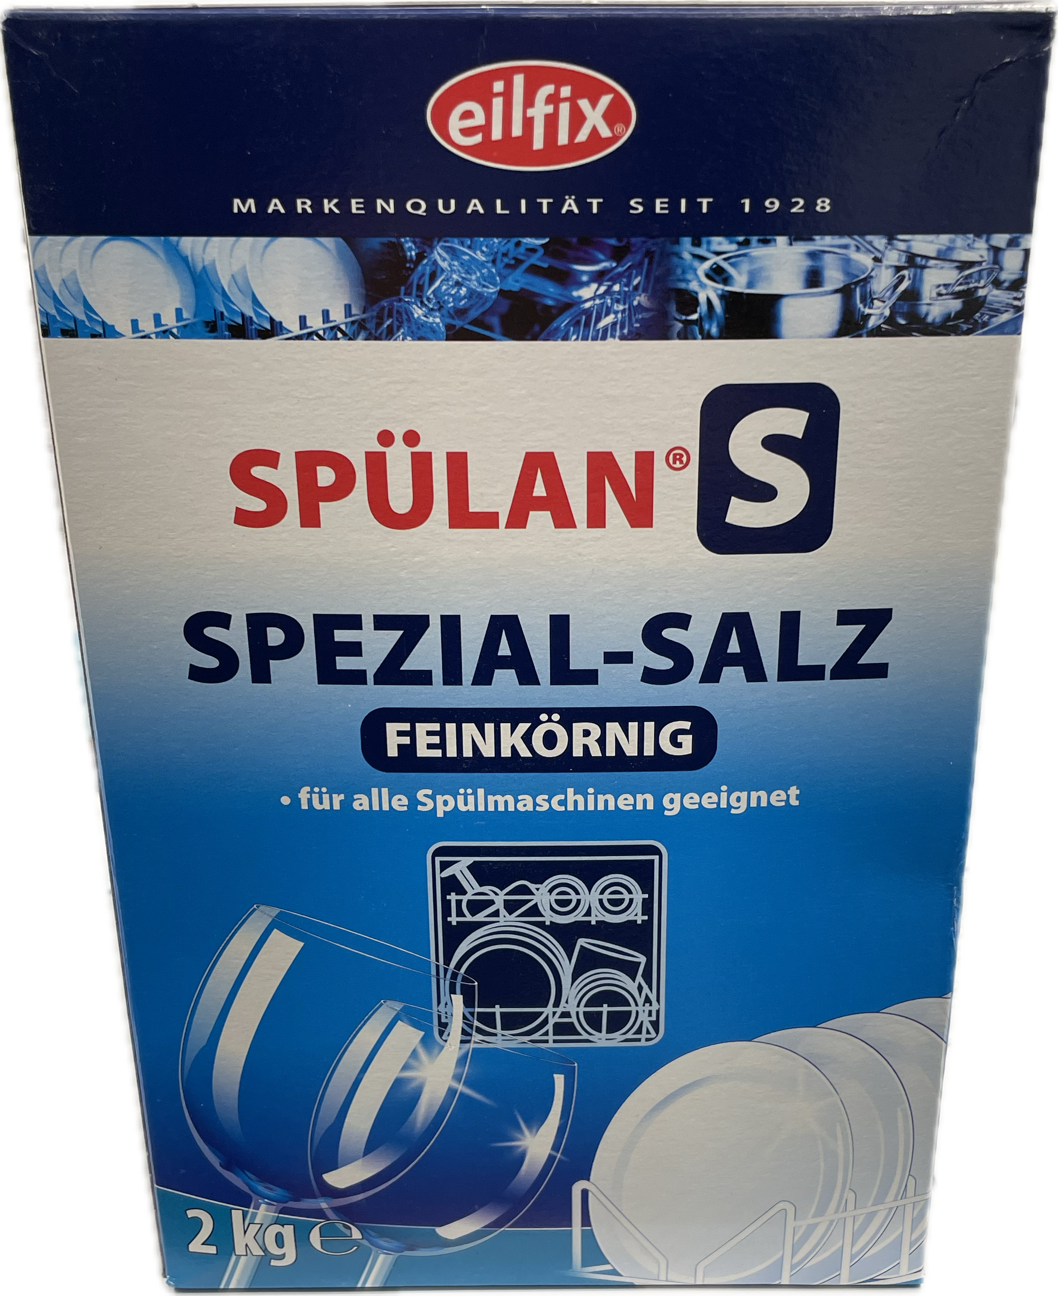 Spülan S Spezial-Salz